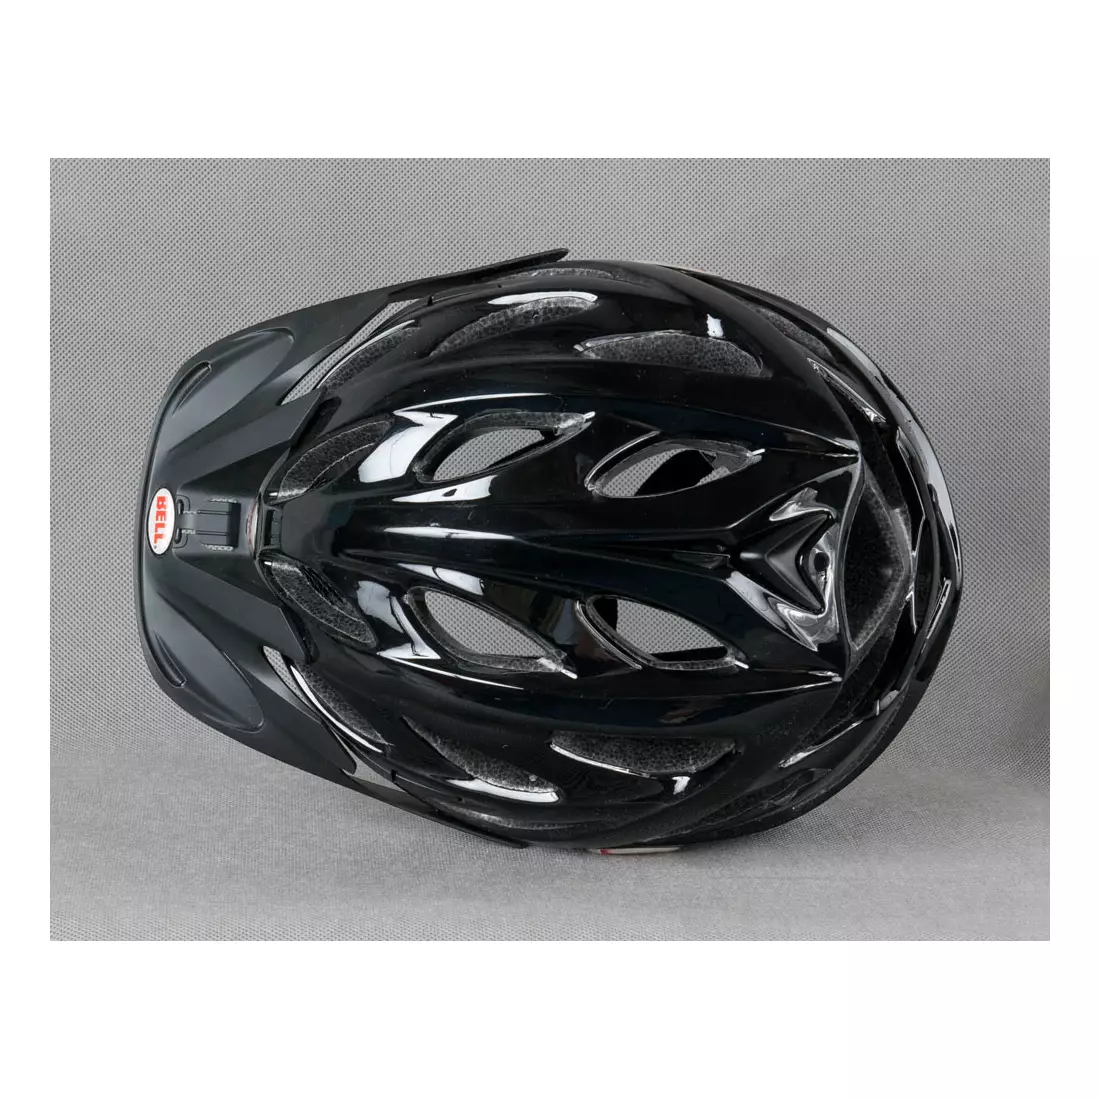 Dámská cyklistická přilba BELL - ARELLA, barva: Černá